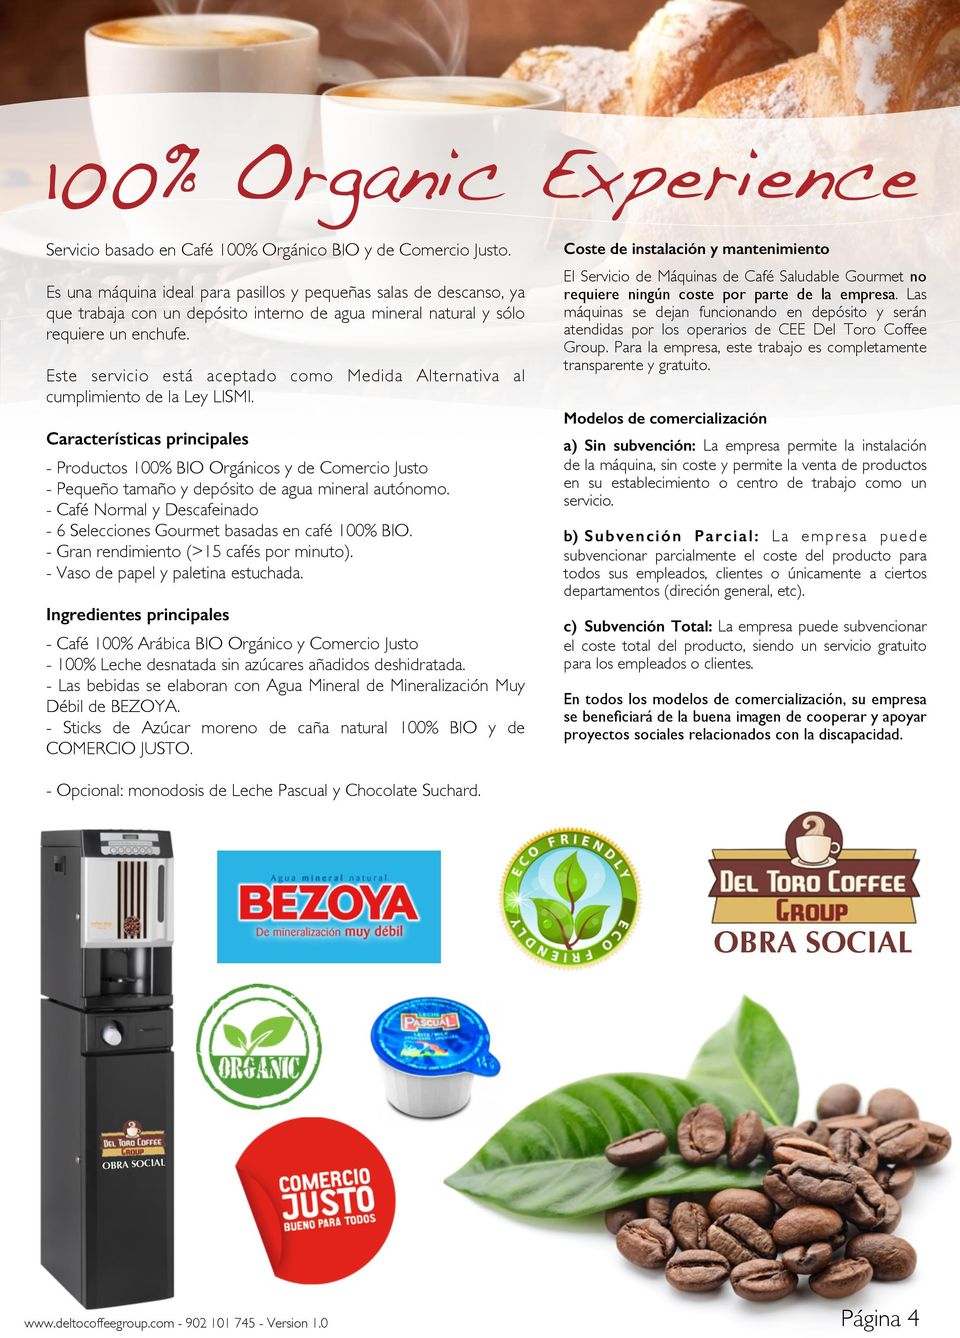 El Servicio de Máquinas de Café Saludable Gourmet no requiere ningún coste por parte de la empresa.